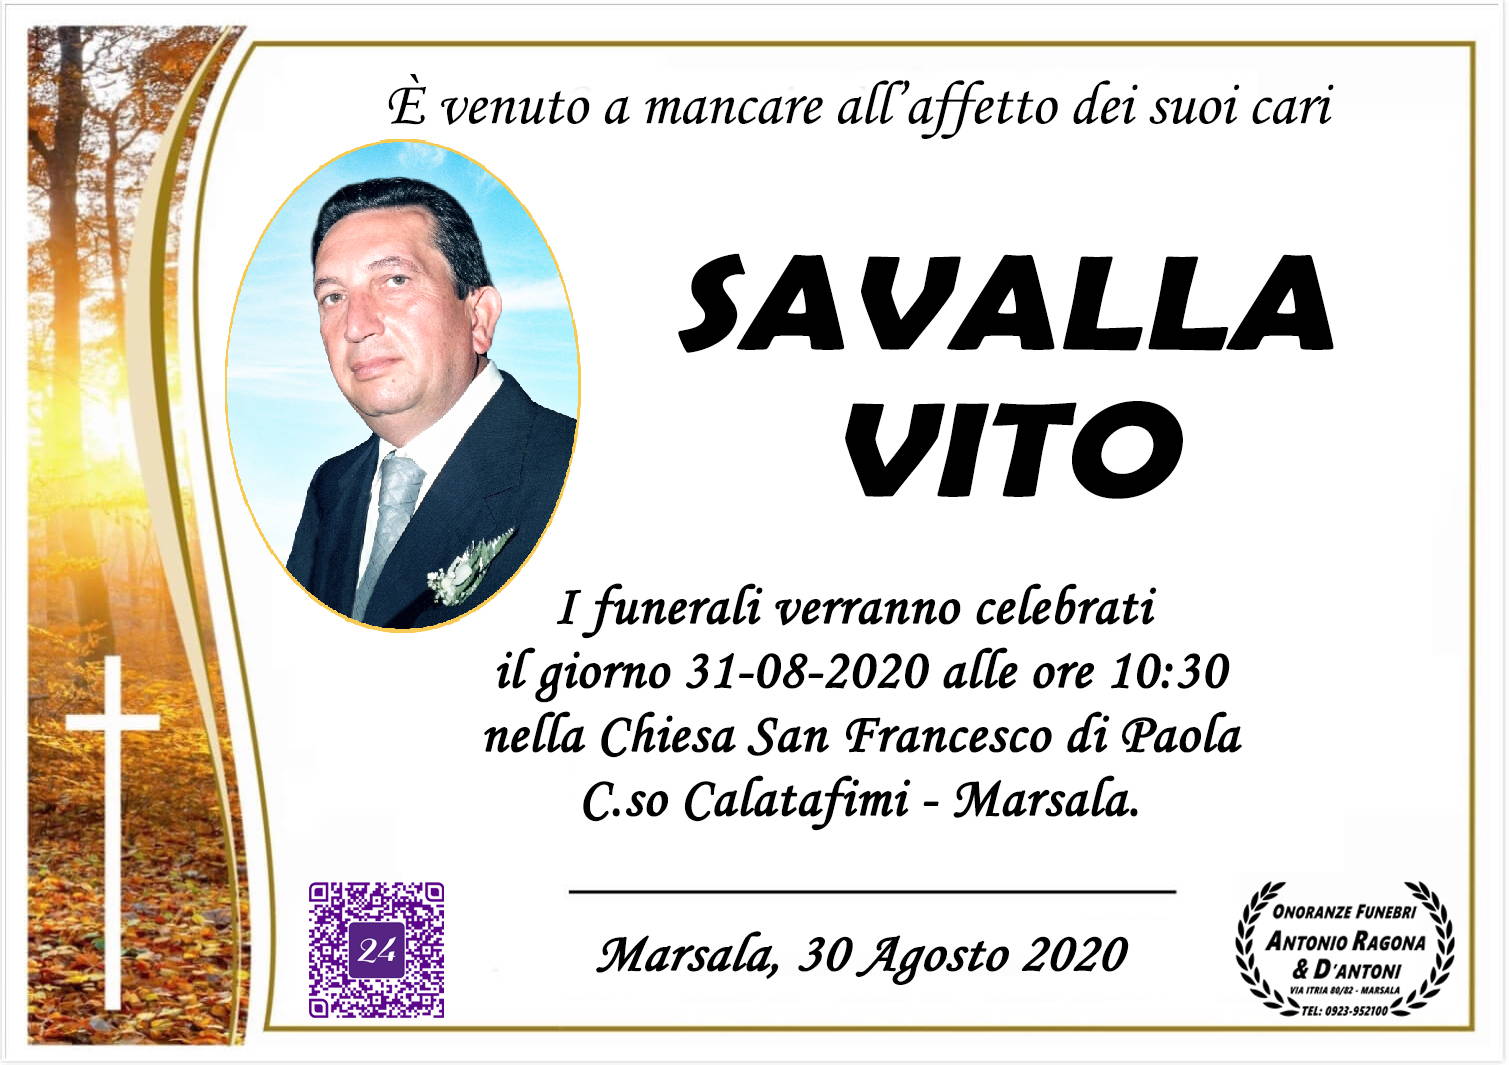 Vito Savalla